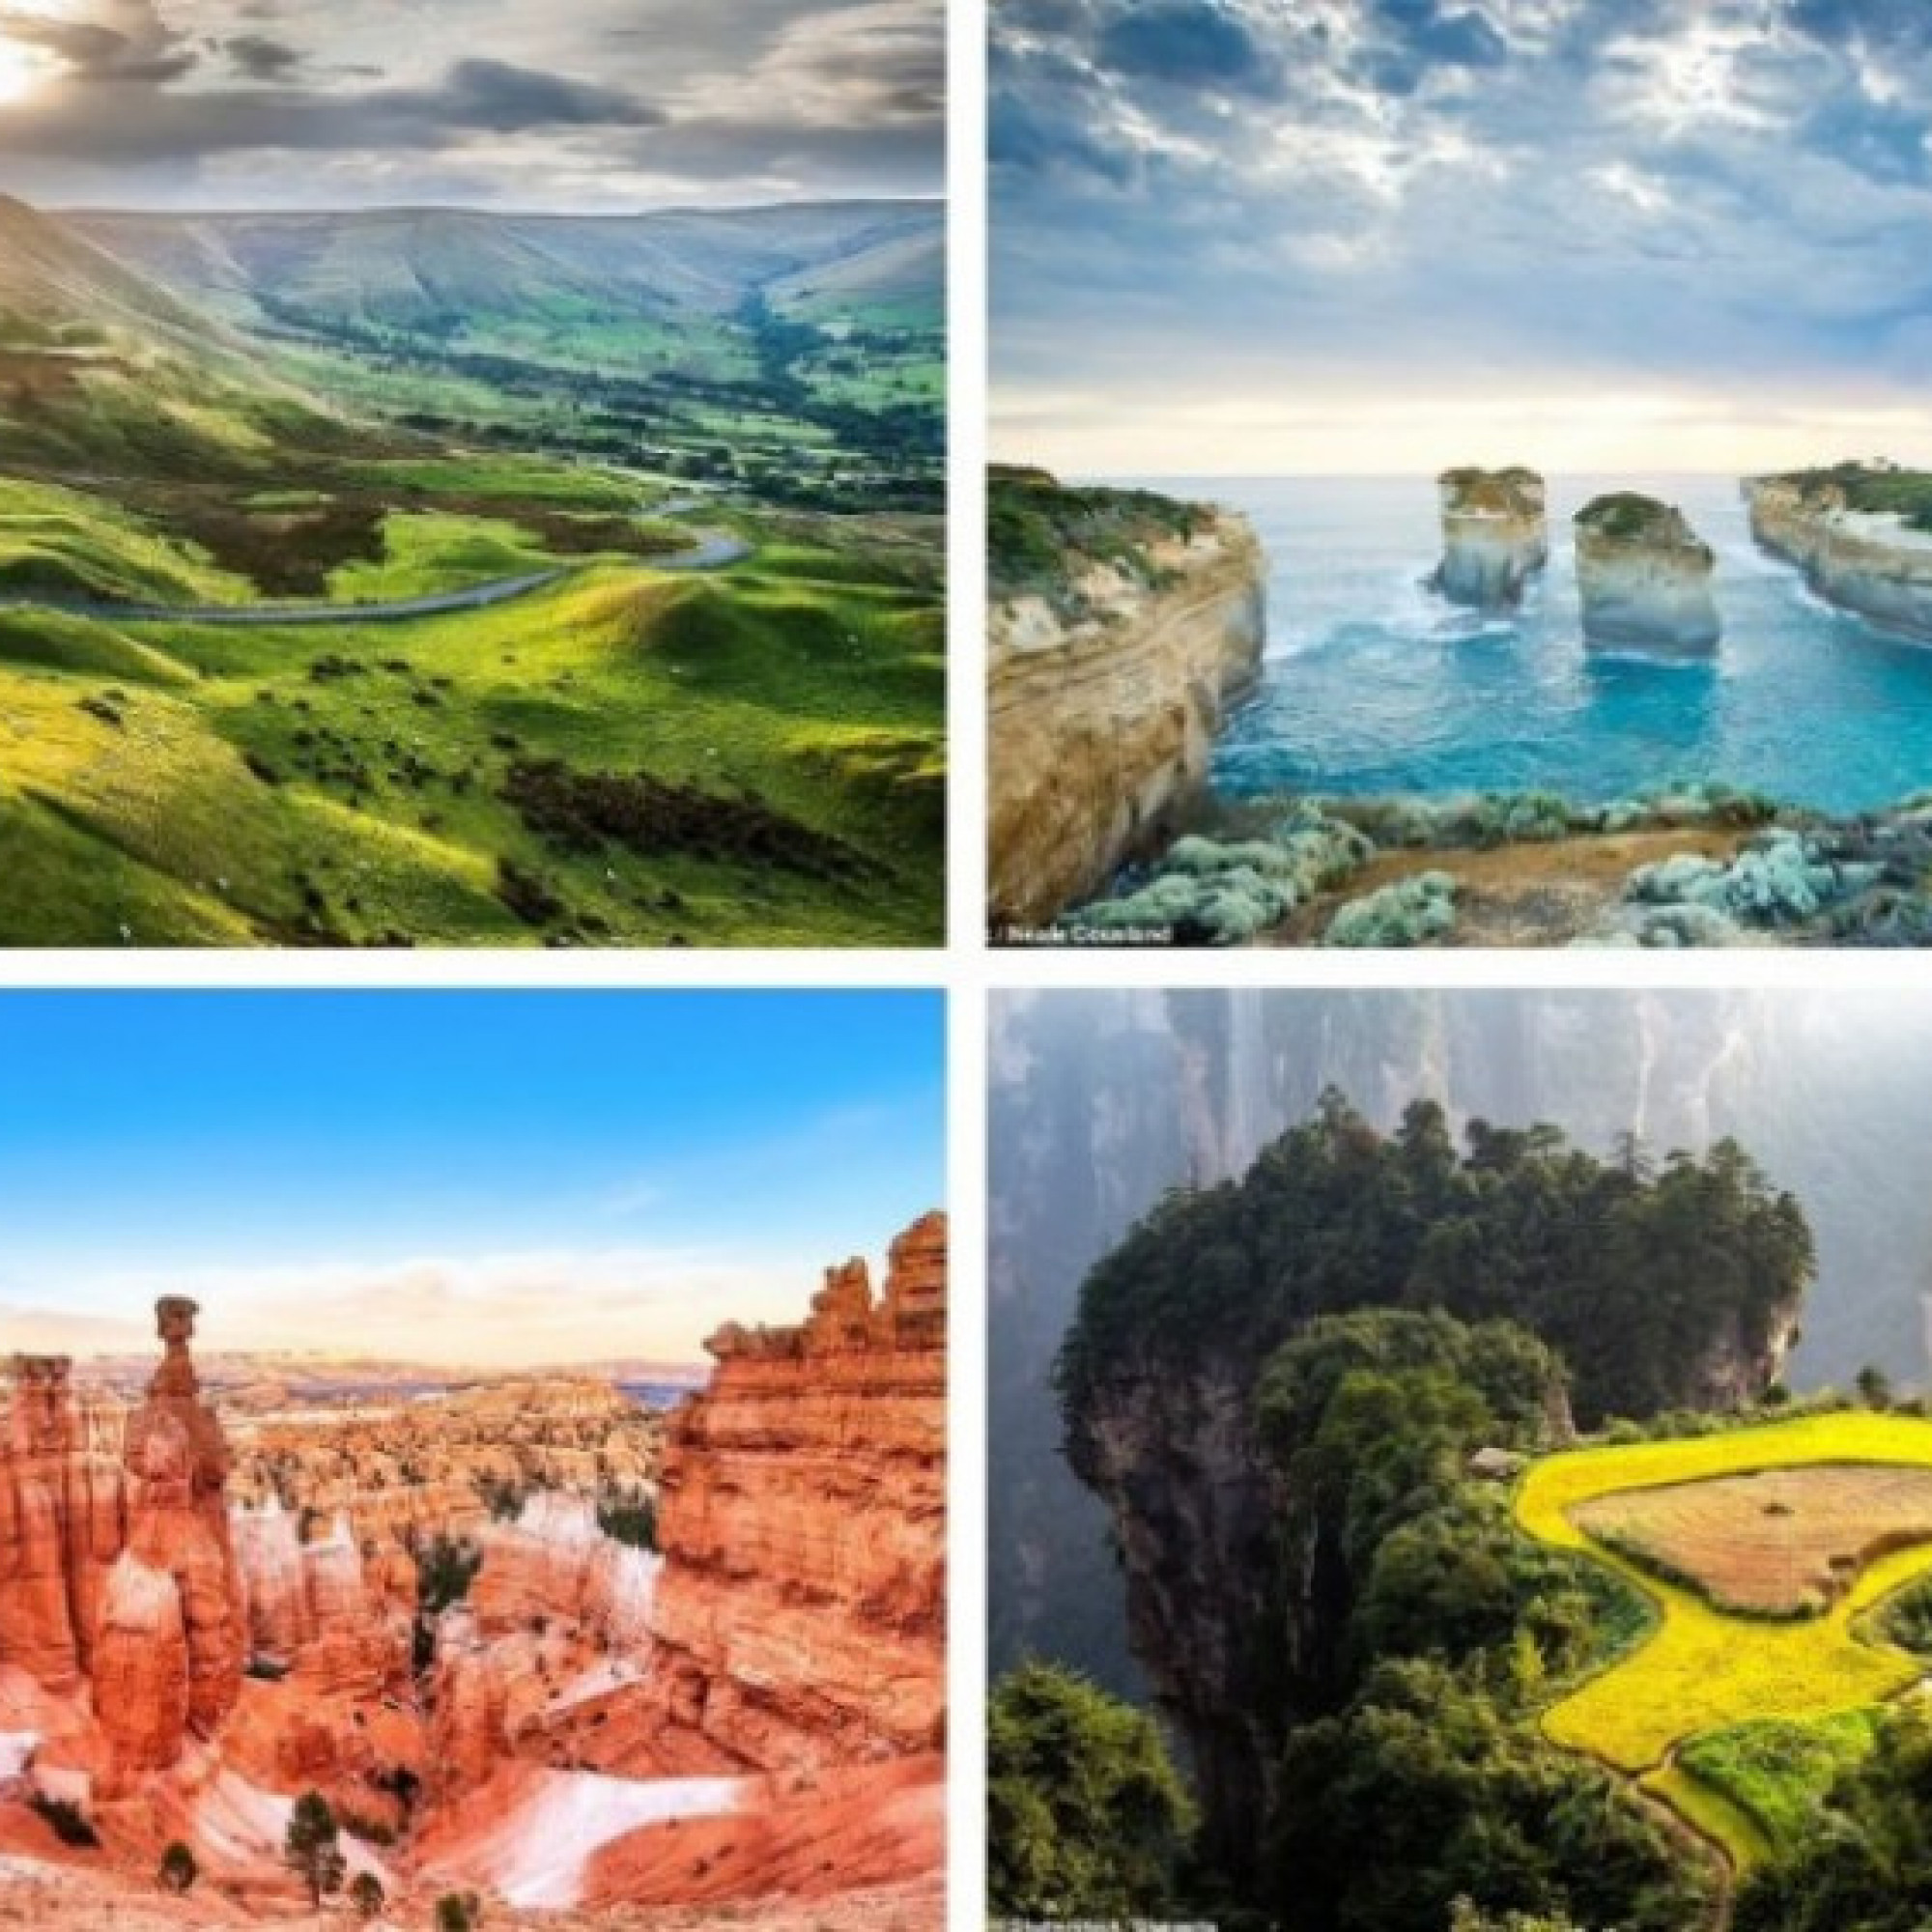  - 12 công viên quốc gia đẹp nhất hành tinh